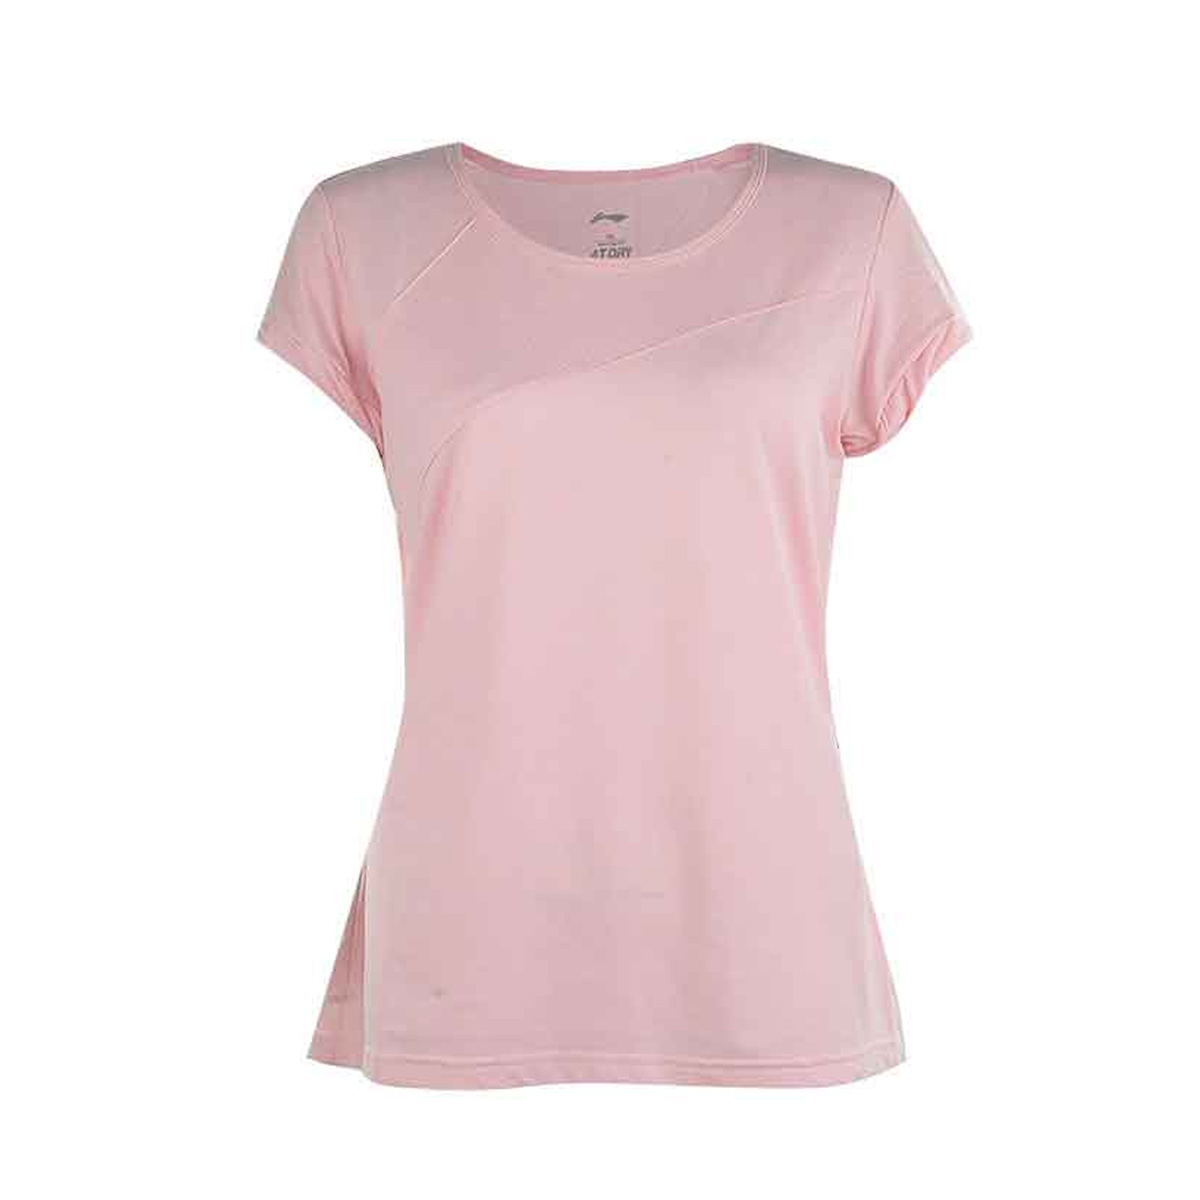 Женская футболка LI-NING ATSH142-5 (размеры: L, XL, 2XL). 